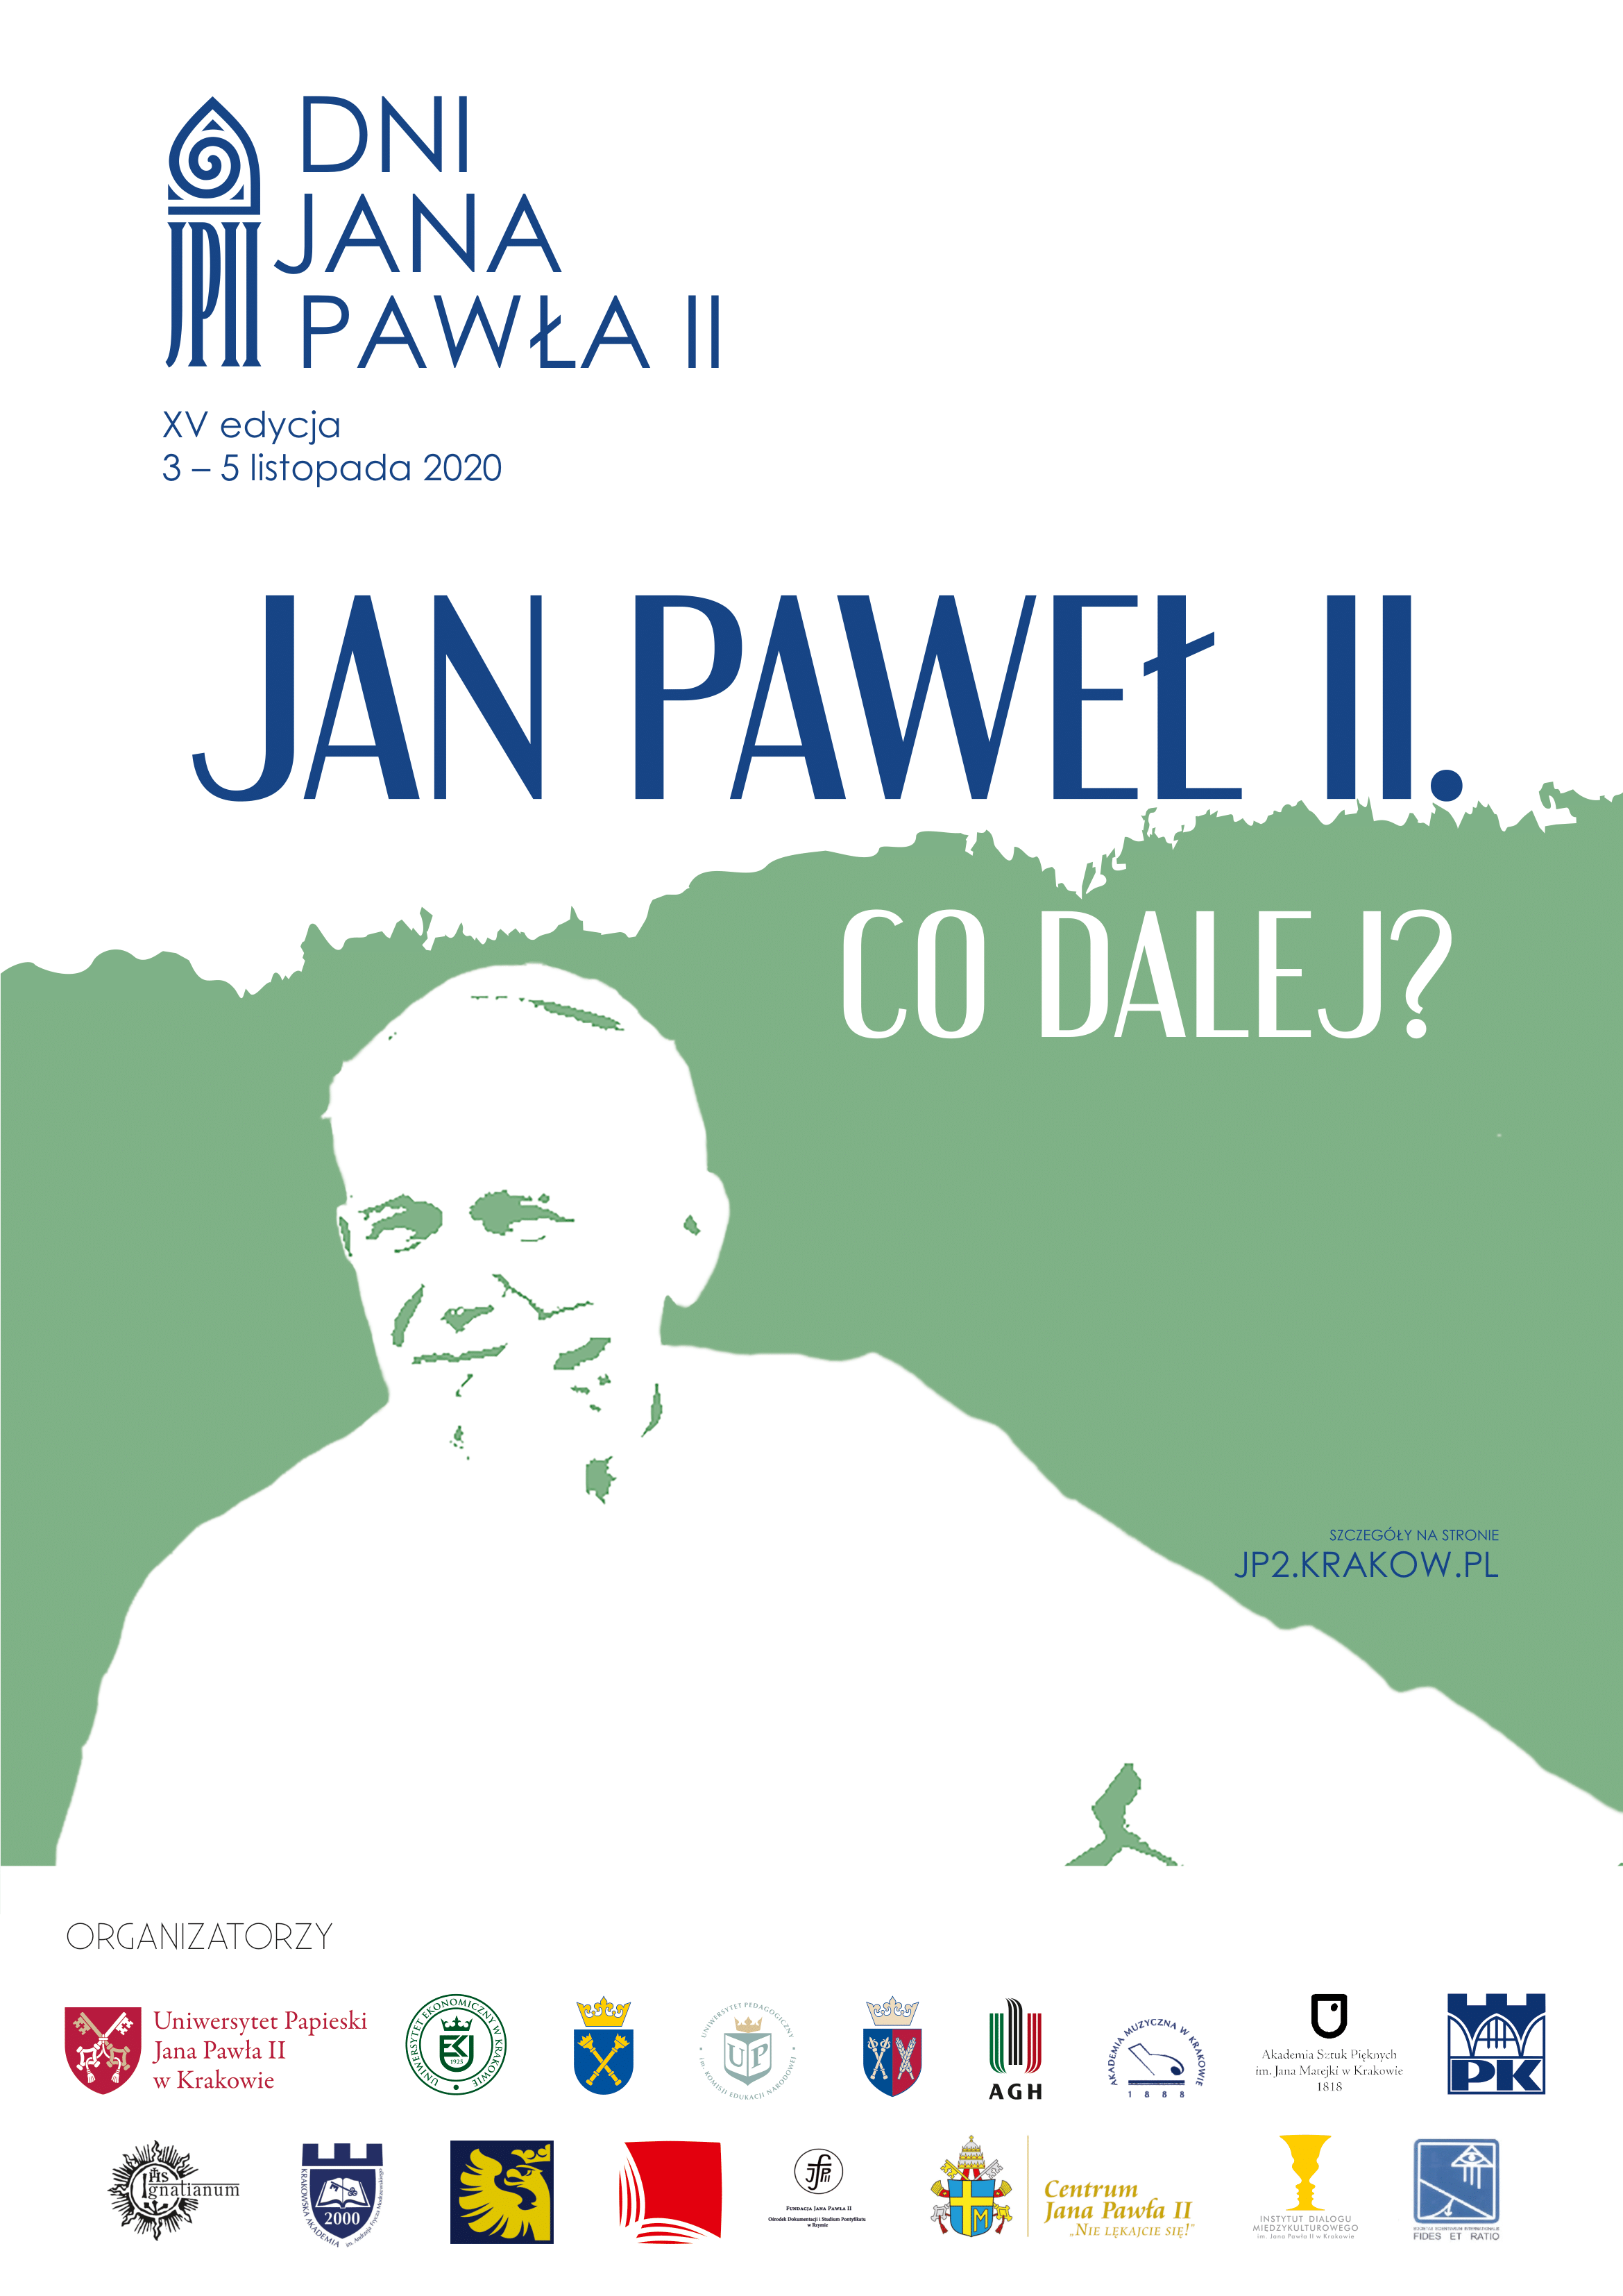 XV edycja Dni Jana Pawła II 2020 “Jan Paweł II. Co dalej?”